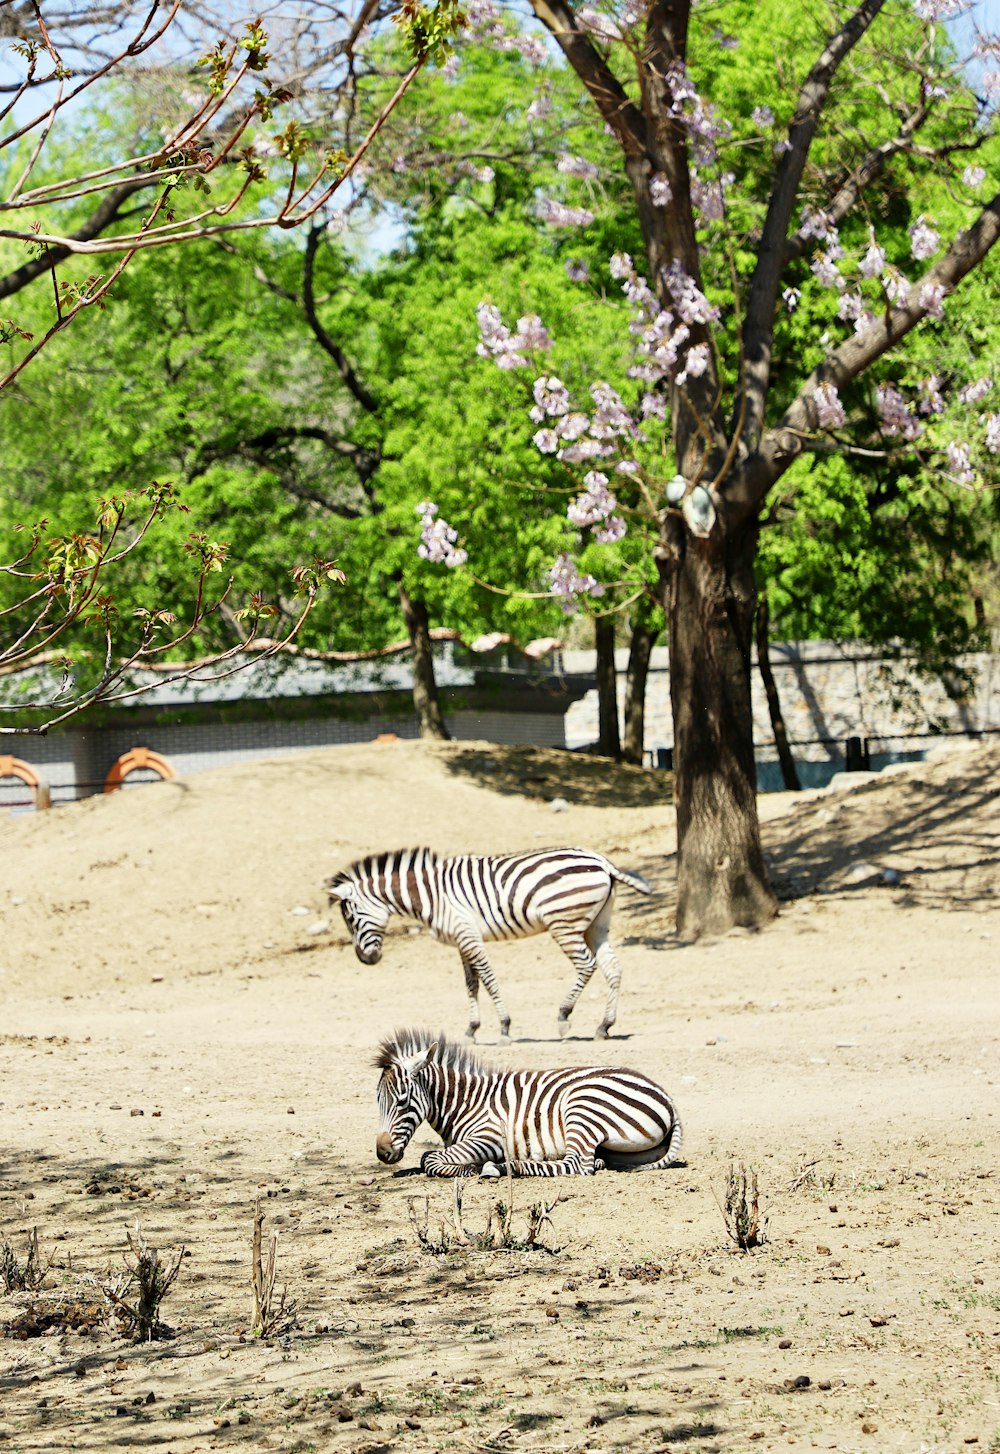 zebra in piedi sulla sabbia marrone vicino agli alberi verdi durante il giorno